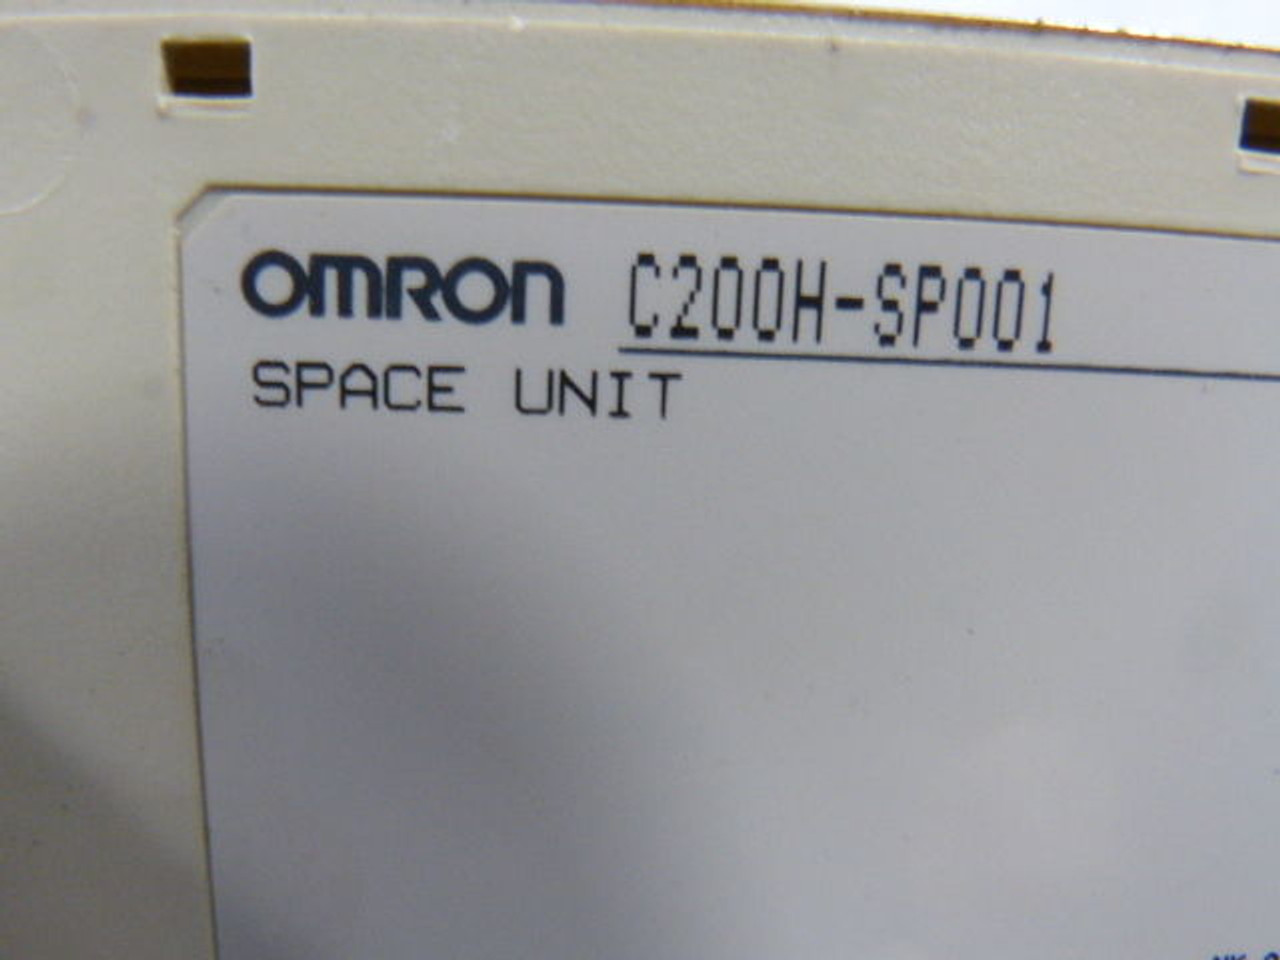 Omron C200H-SP001 I/O Space Unit USED